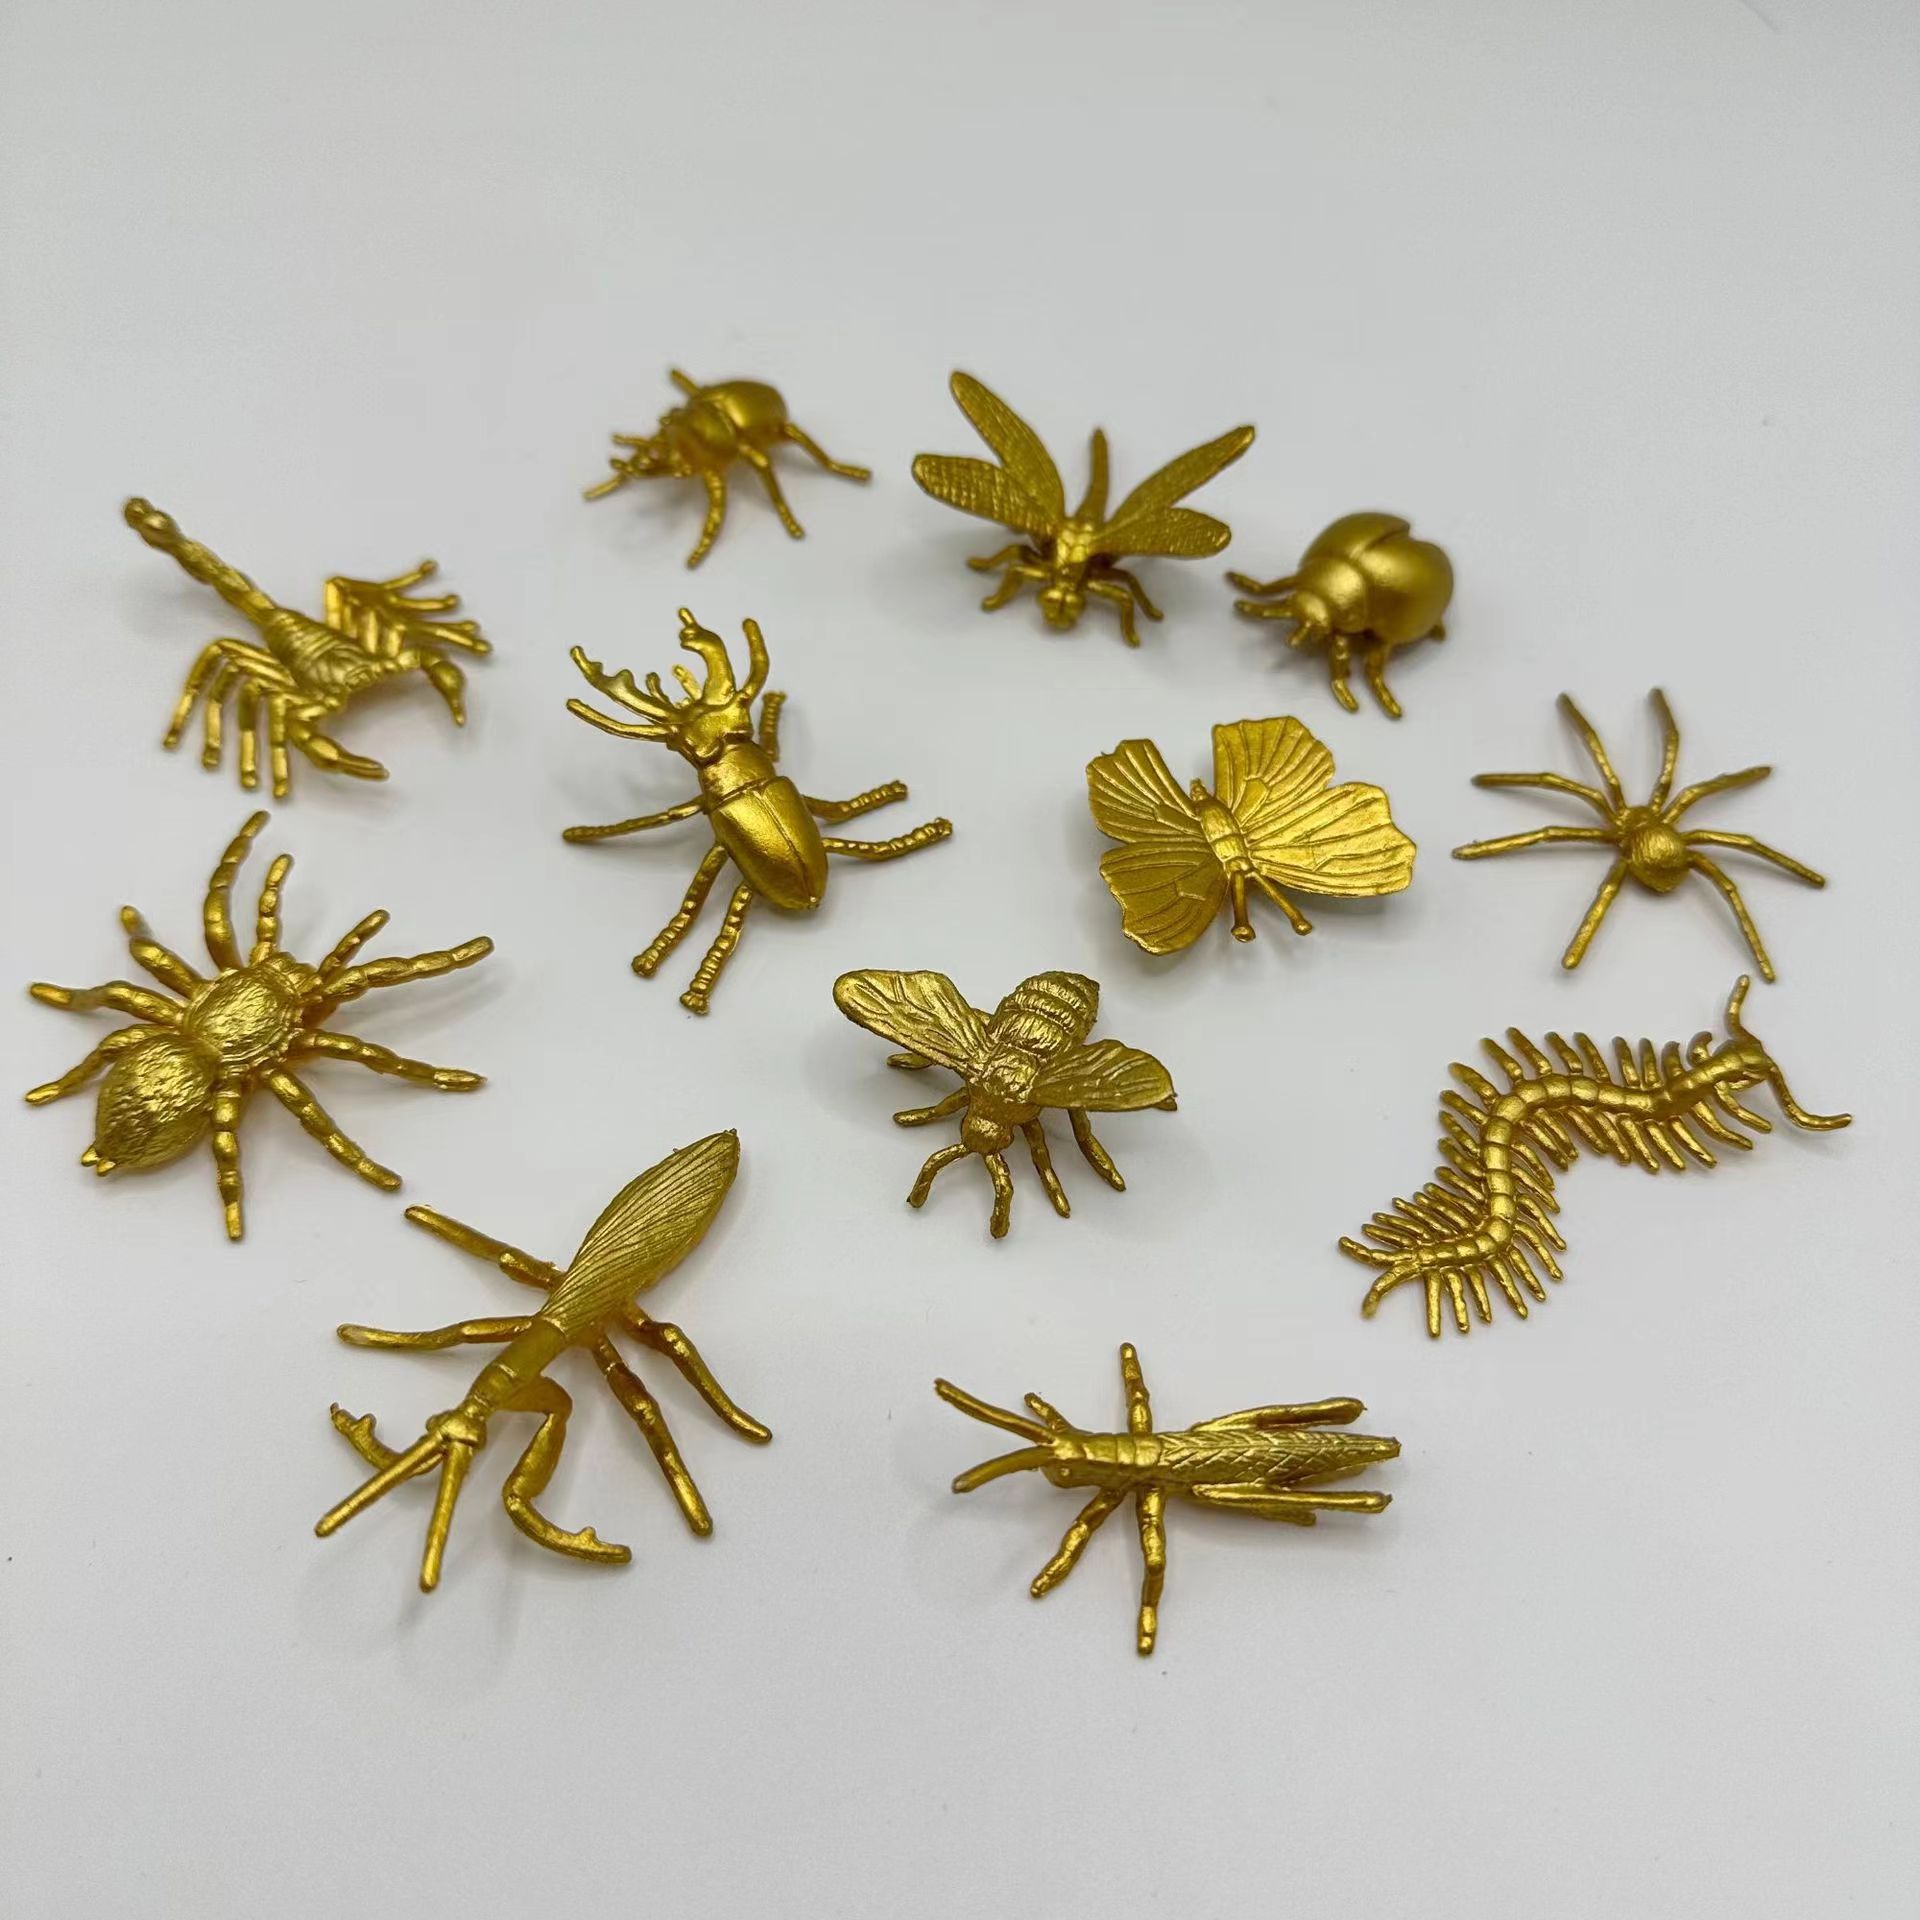 Insetto Resina Animale Esemplare Ragno Vario Granchio Scorpione Scarabeo  Collezione Scienza Bambini Sorpresa Regalo Ambra Decorazione Domestica